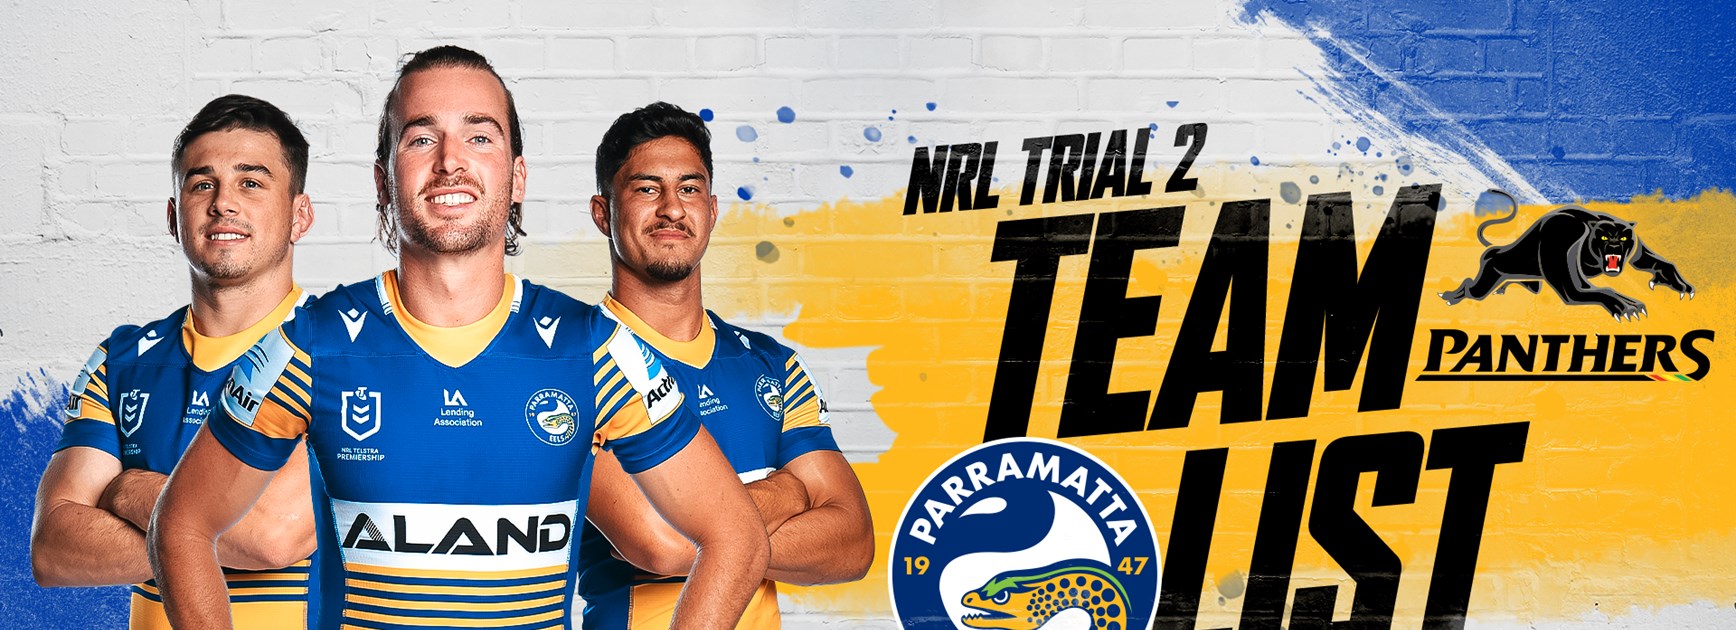 NRL Team List: Panthers v Eels, Trial